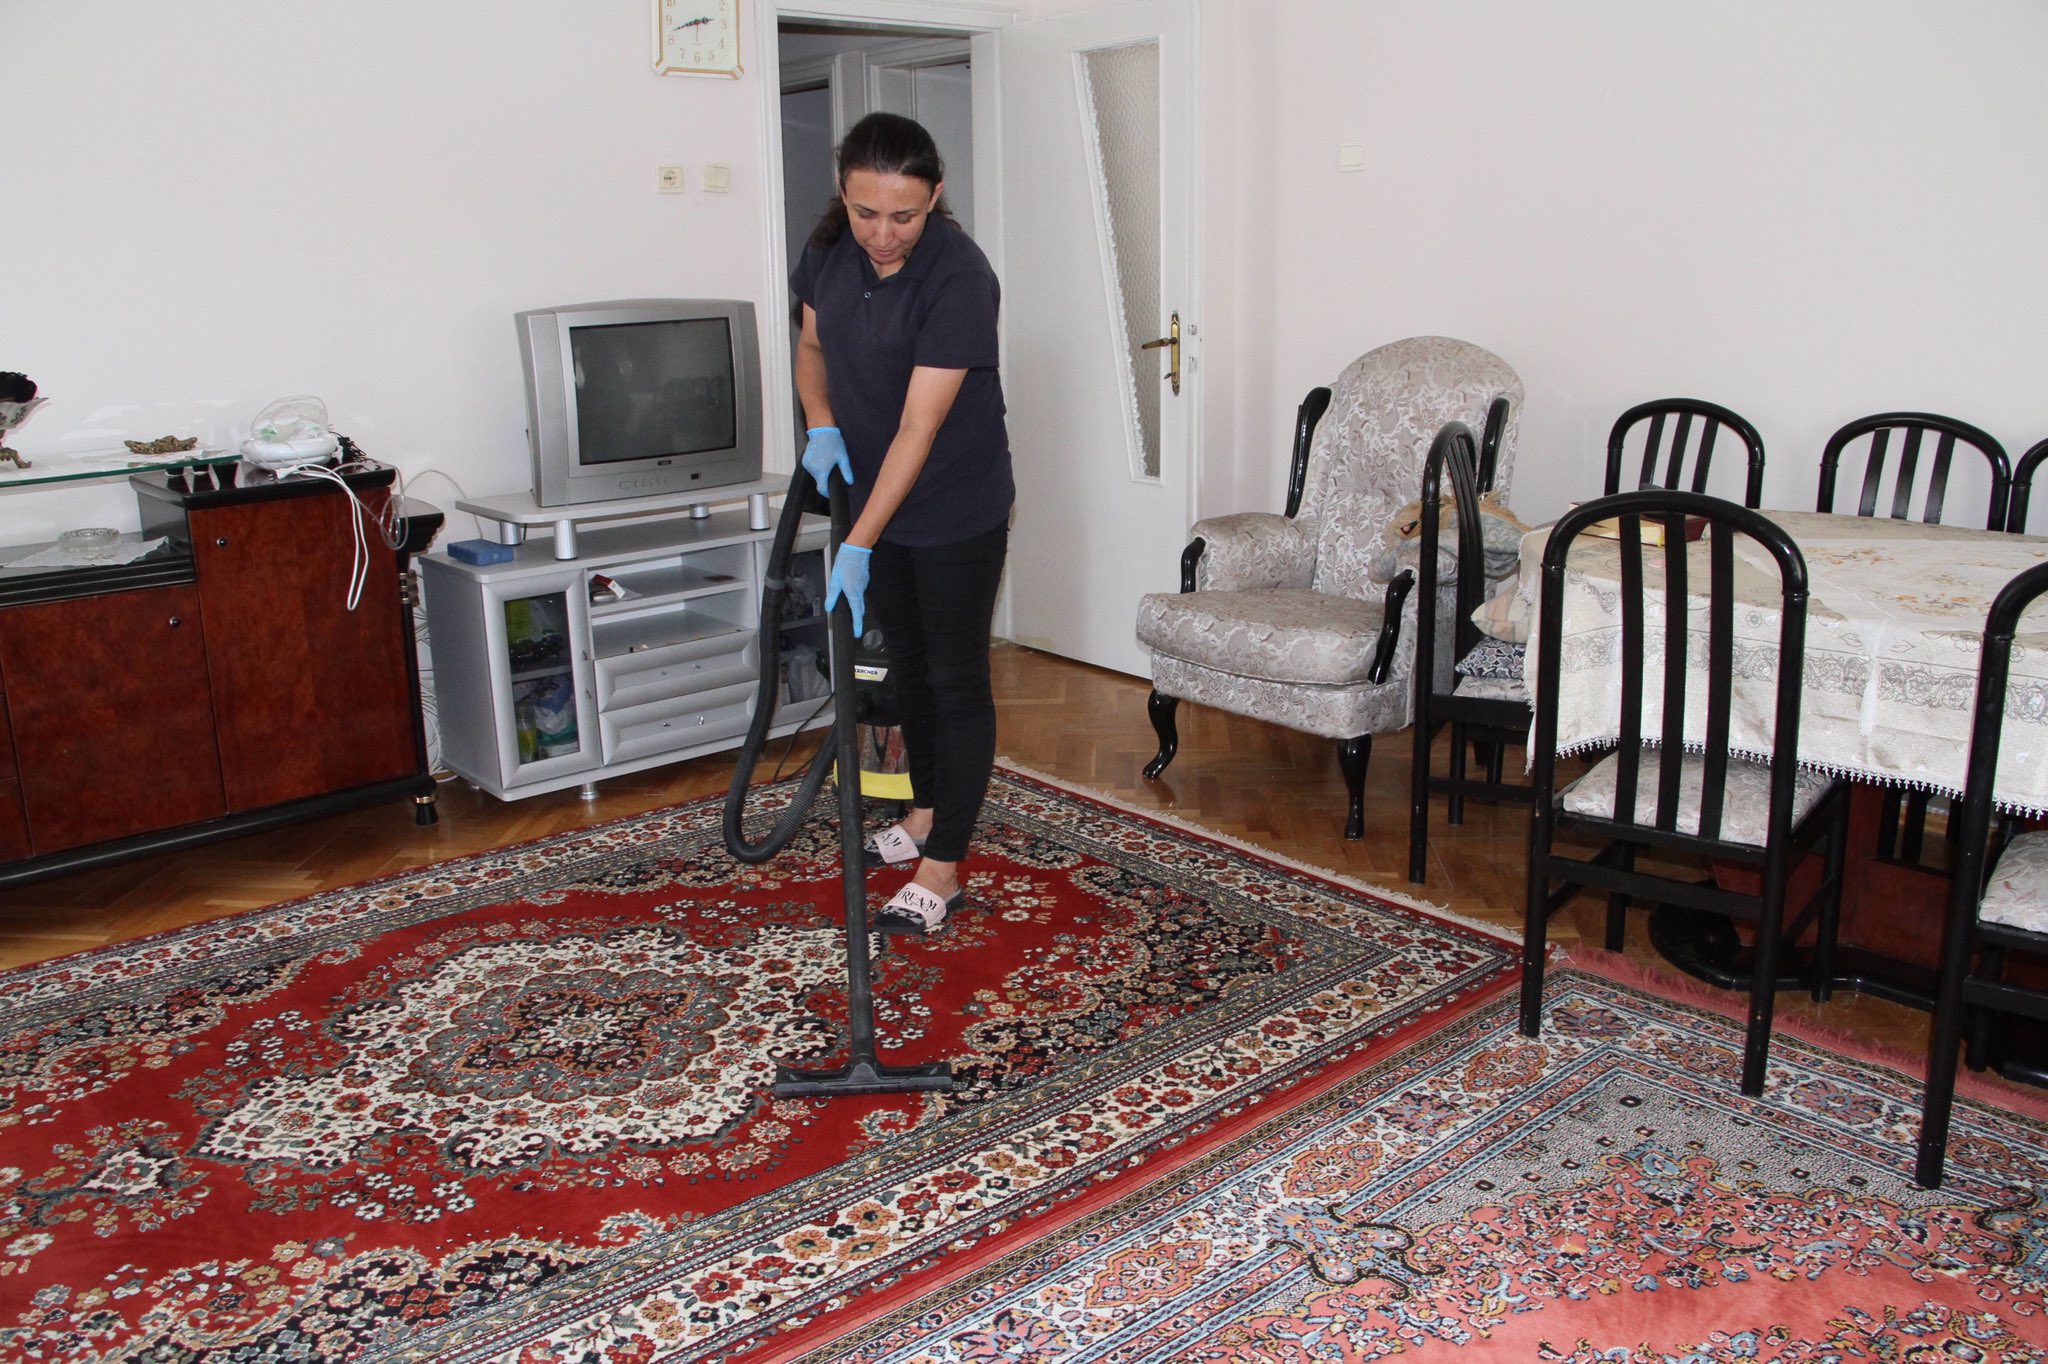 Beypazarı Belediyesi’nden evde temizlik hizmeti (1)